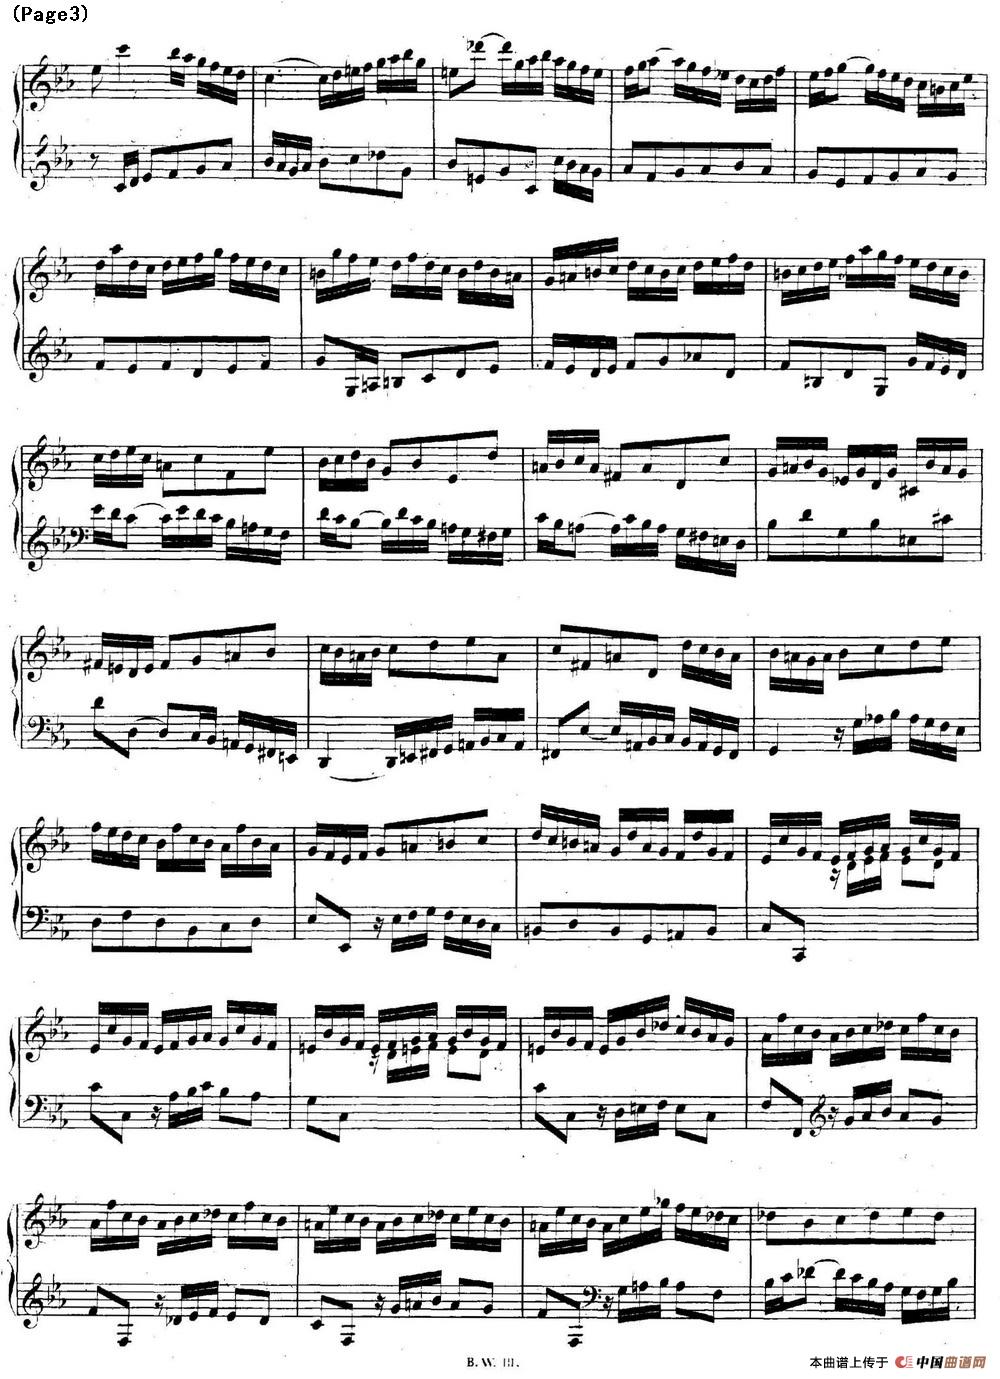 帕蒂塔6首德国组曲（No.2 c小调 巴赫 Partita c Minor BWV 826）(1)_BWV0826_页面_03.jpg